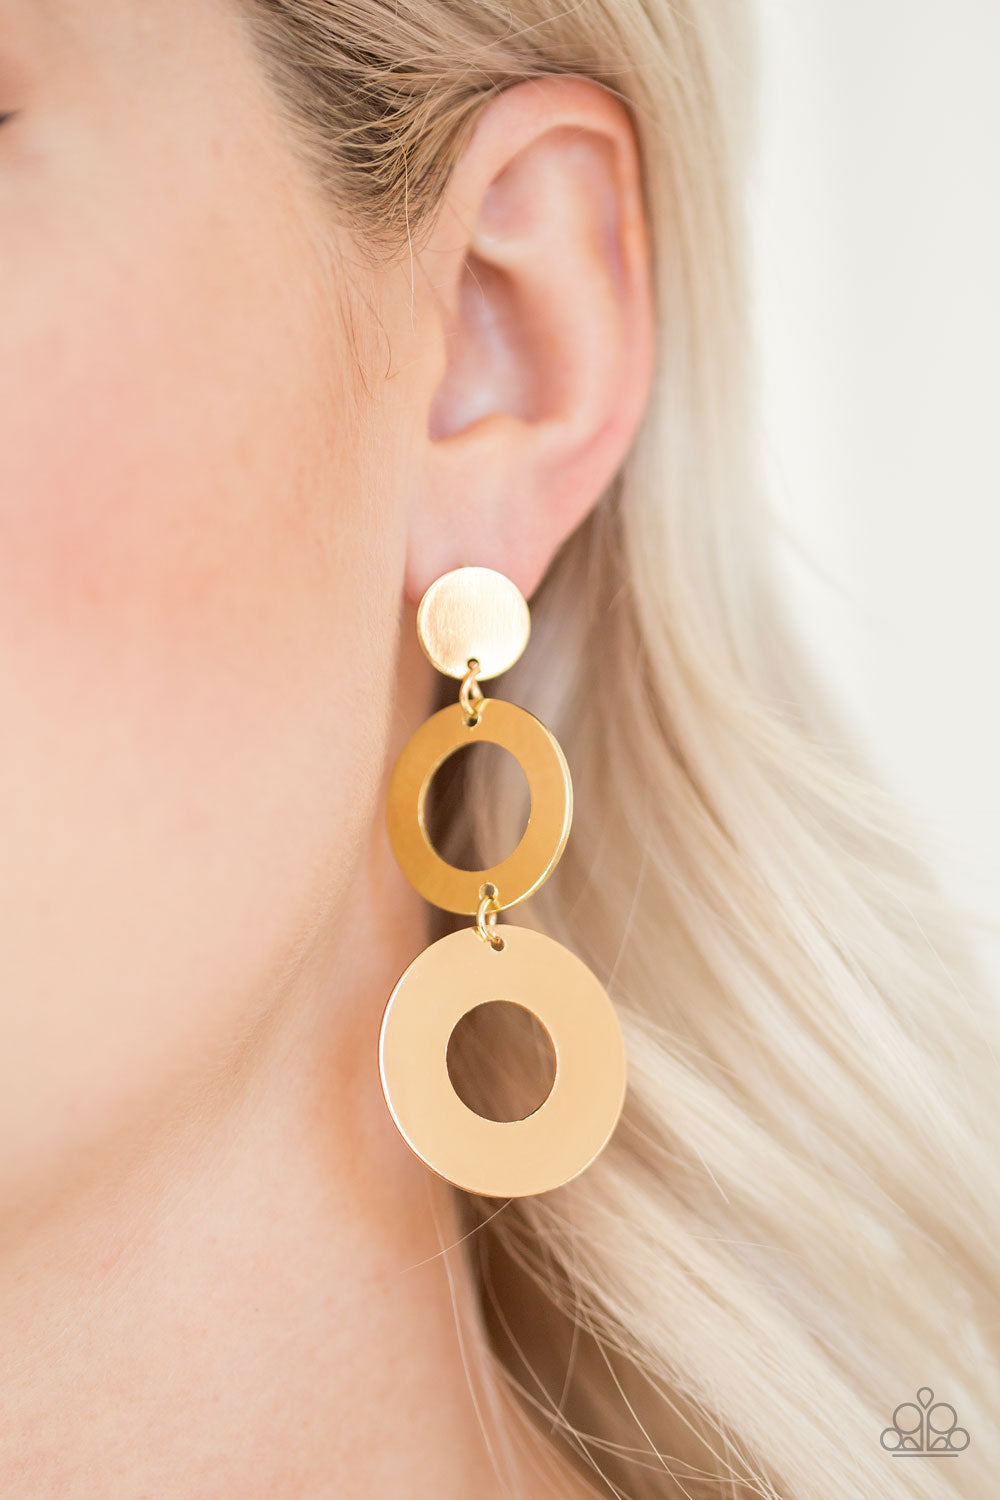 Paparazzi Pop Idol - Gold - Hoops - Post Earrings - $5 Jewelry With Ashley Swint